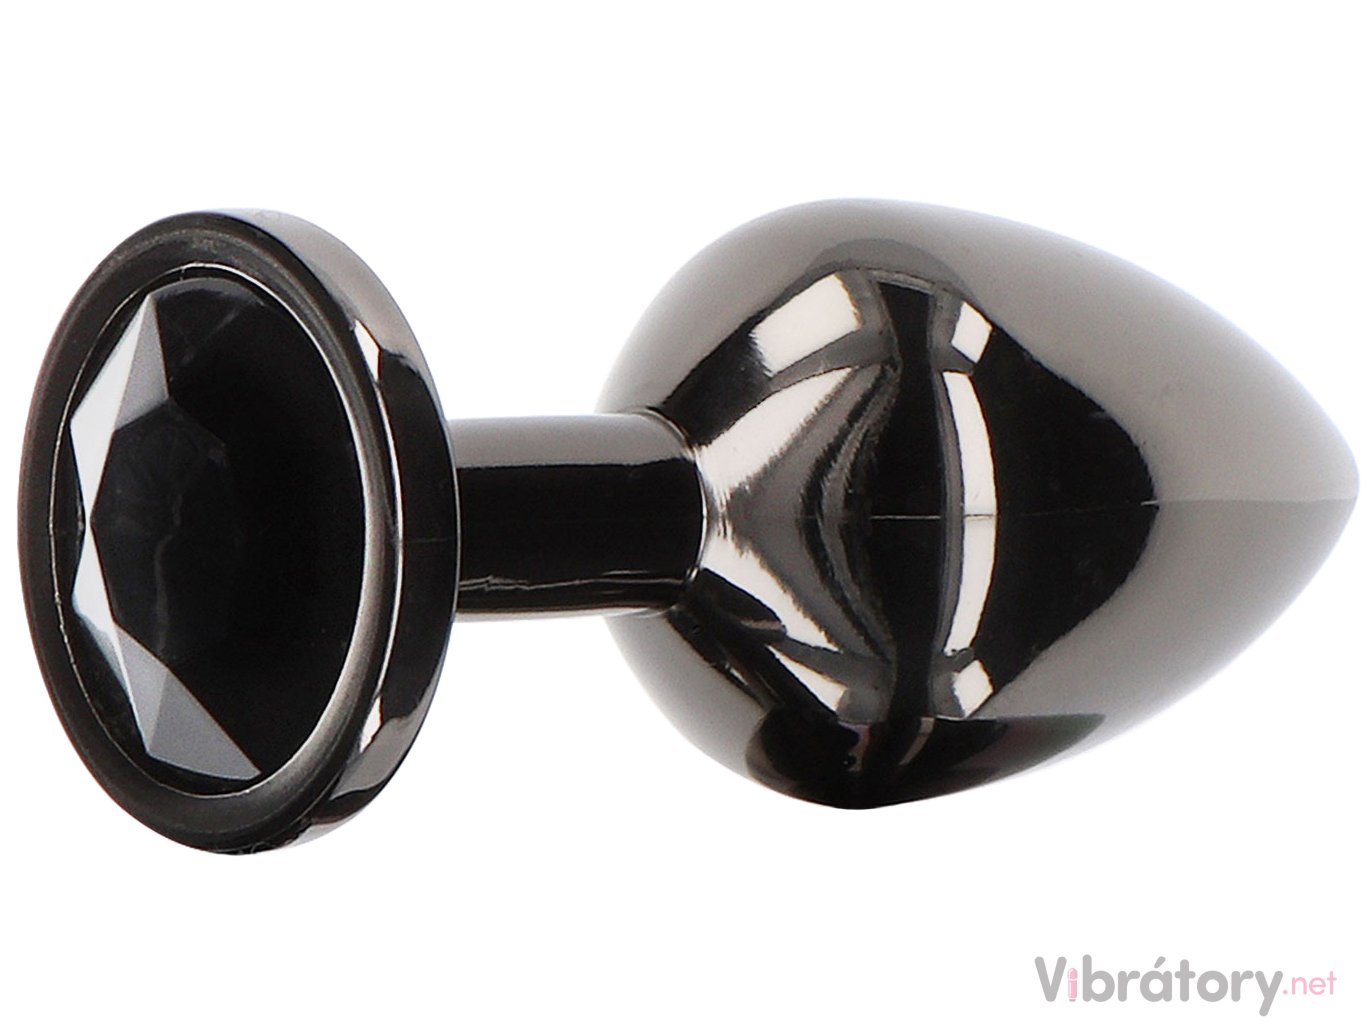 Taboom Luxusní anální kolík se šperkem Taboom Small, černý